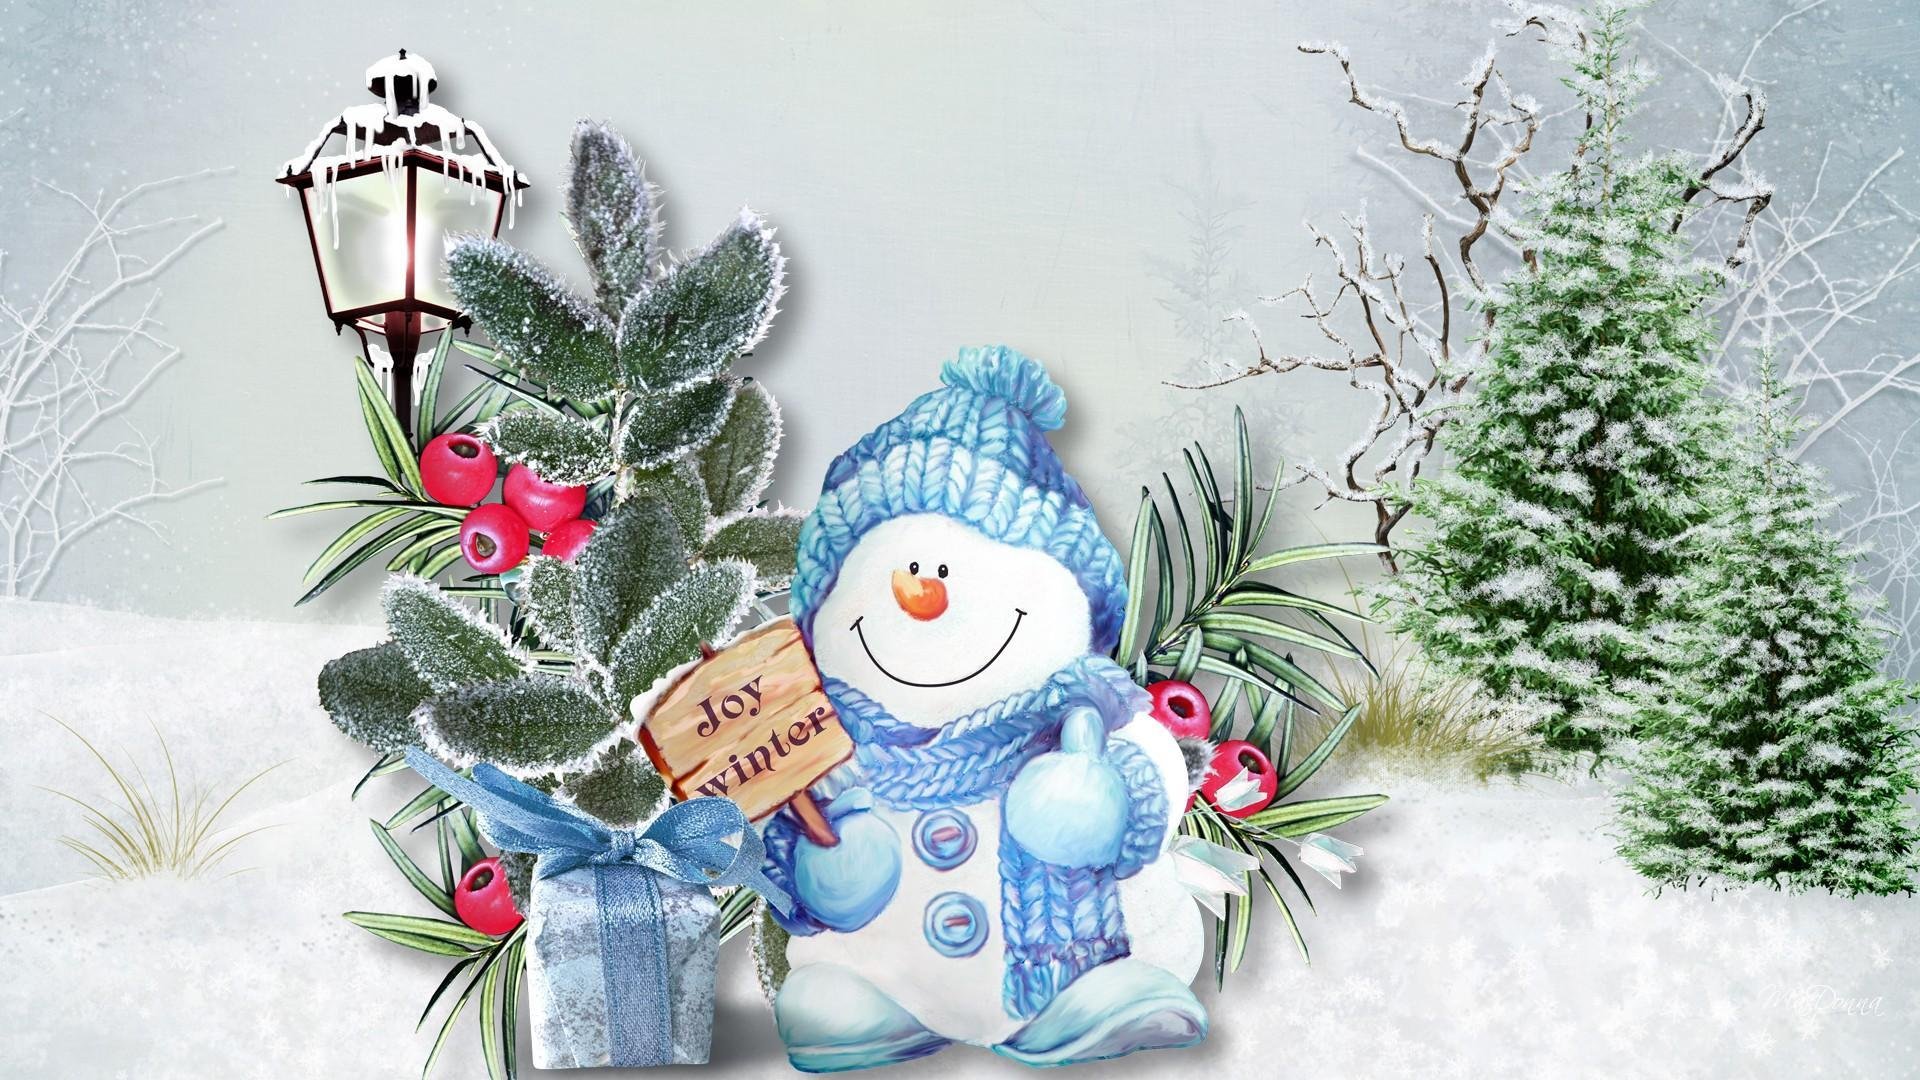 Открытки зимняя тематика. Открытка зимняя. Открытка "Снеговик". Новогодние открытки со снеговиком. Красивые зимние открытки.